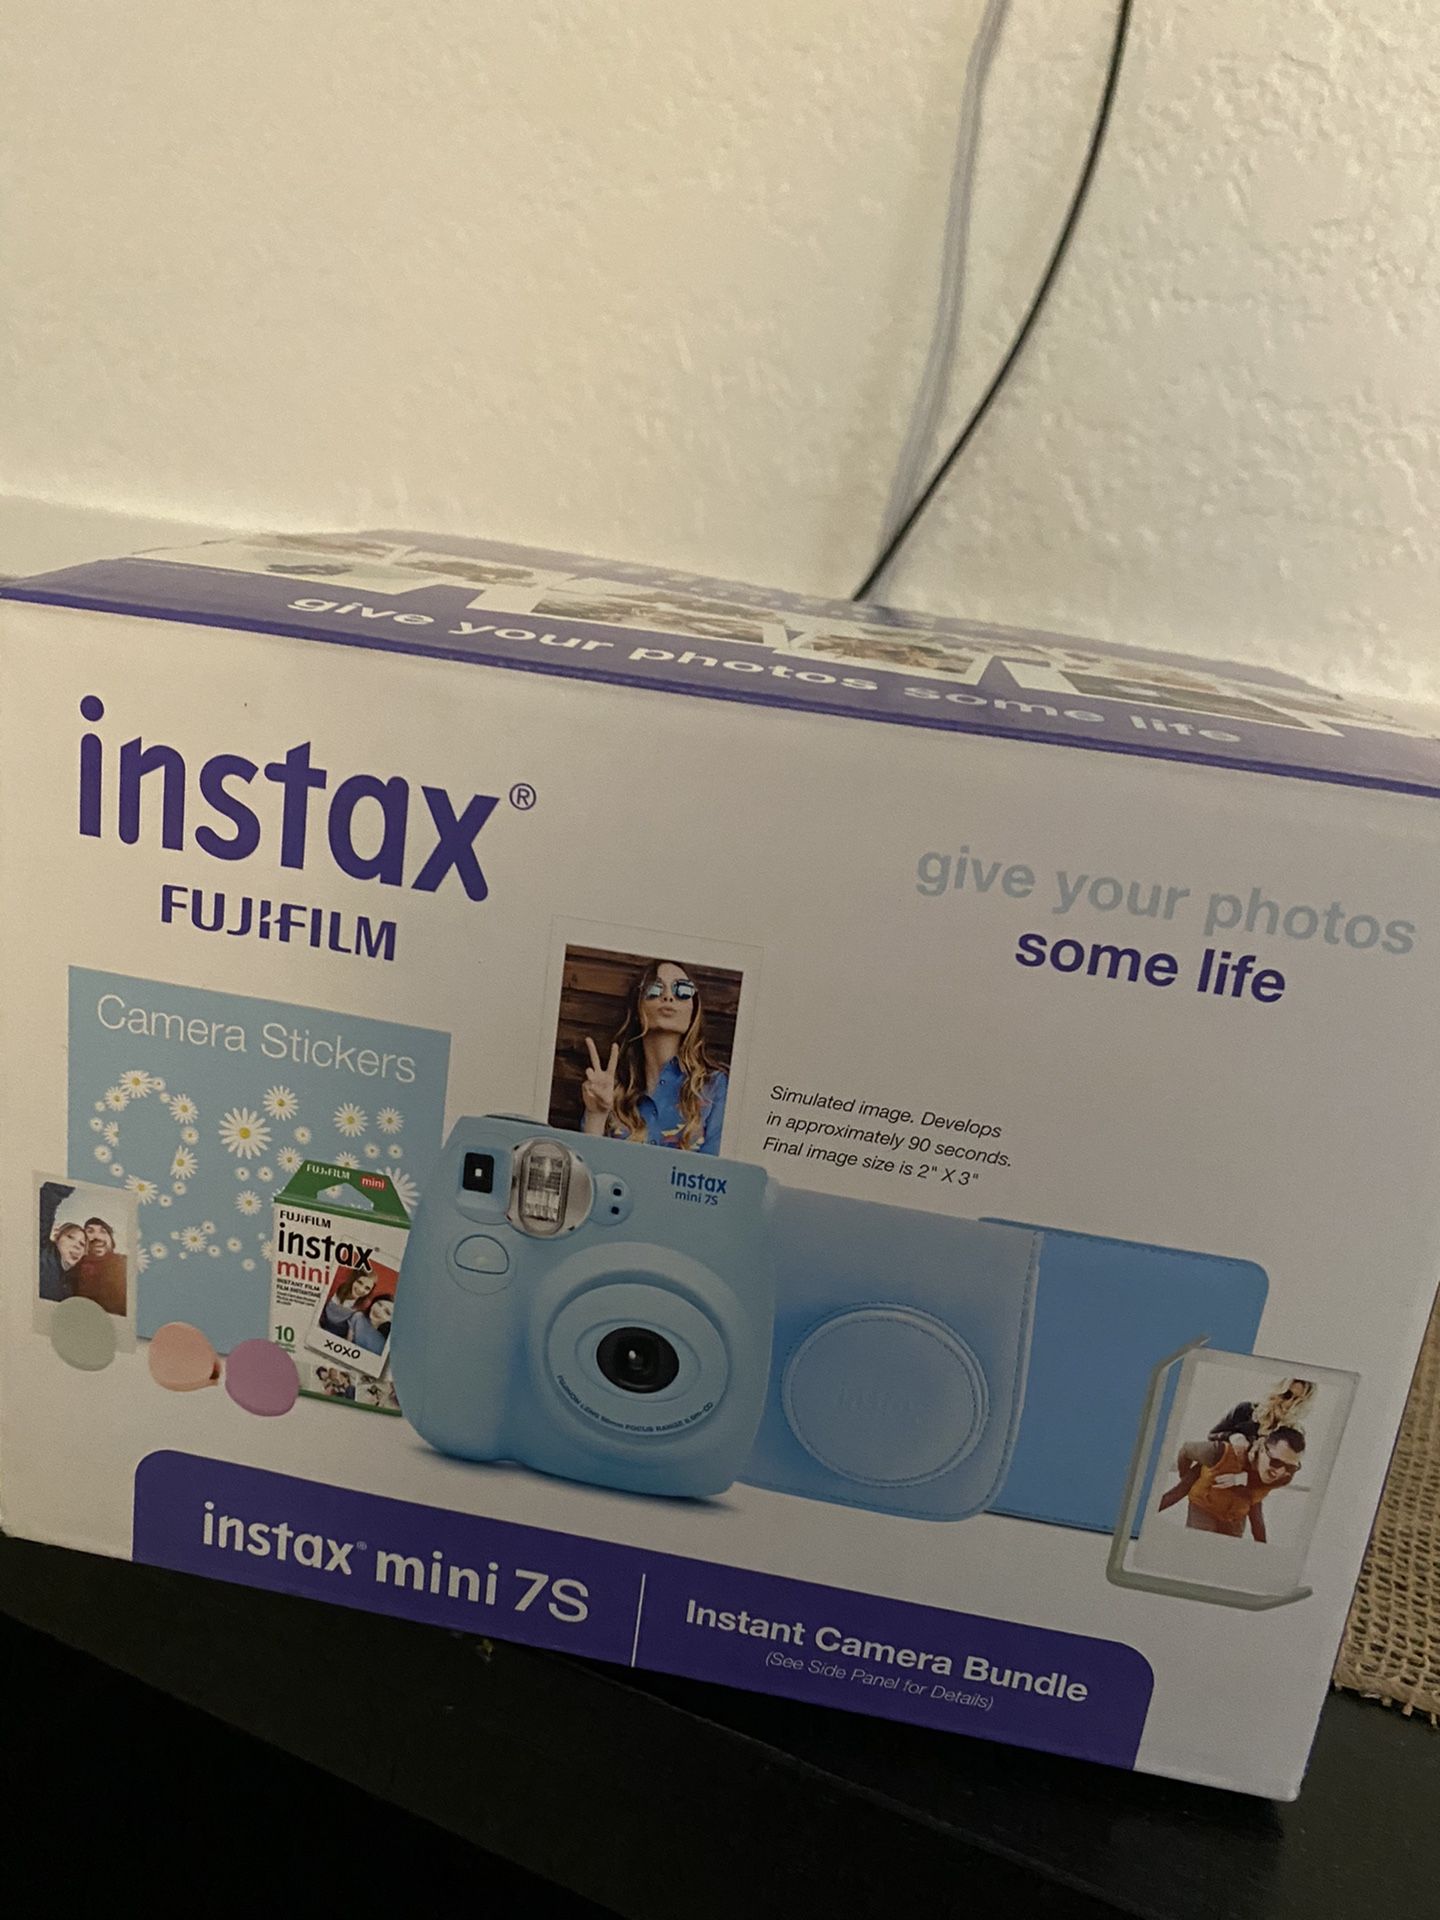 Instax Fuji film camera kit new